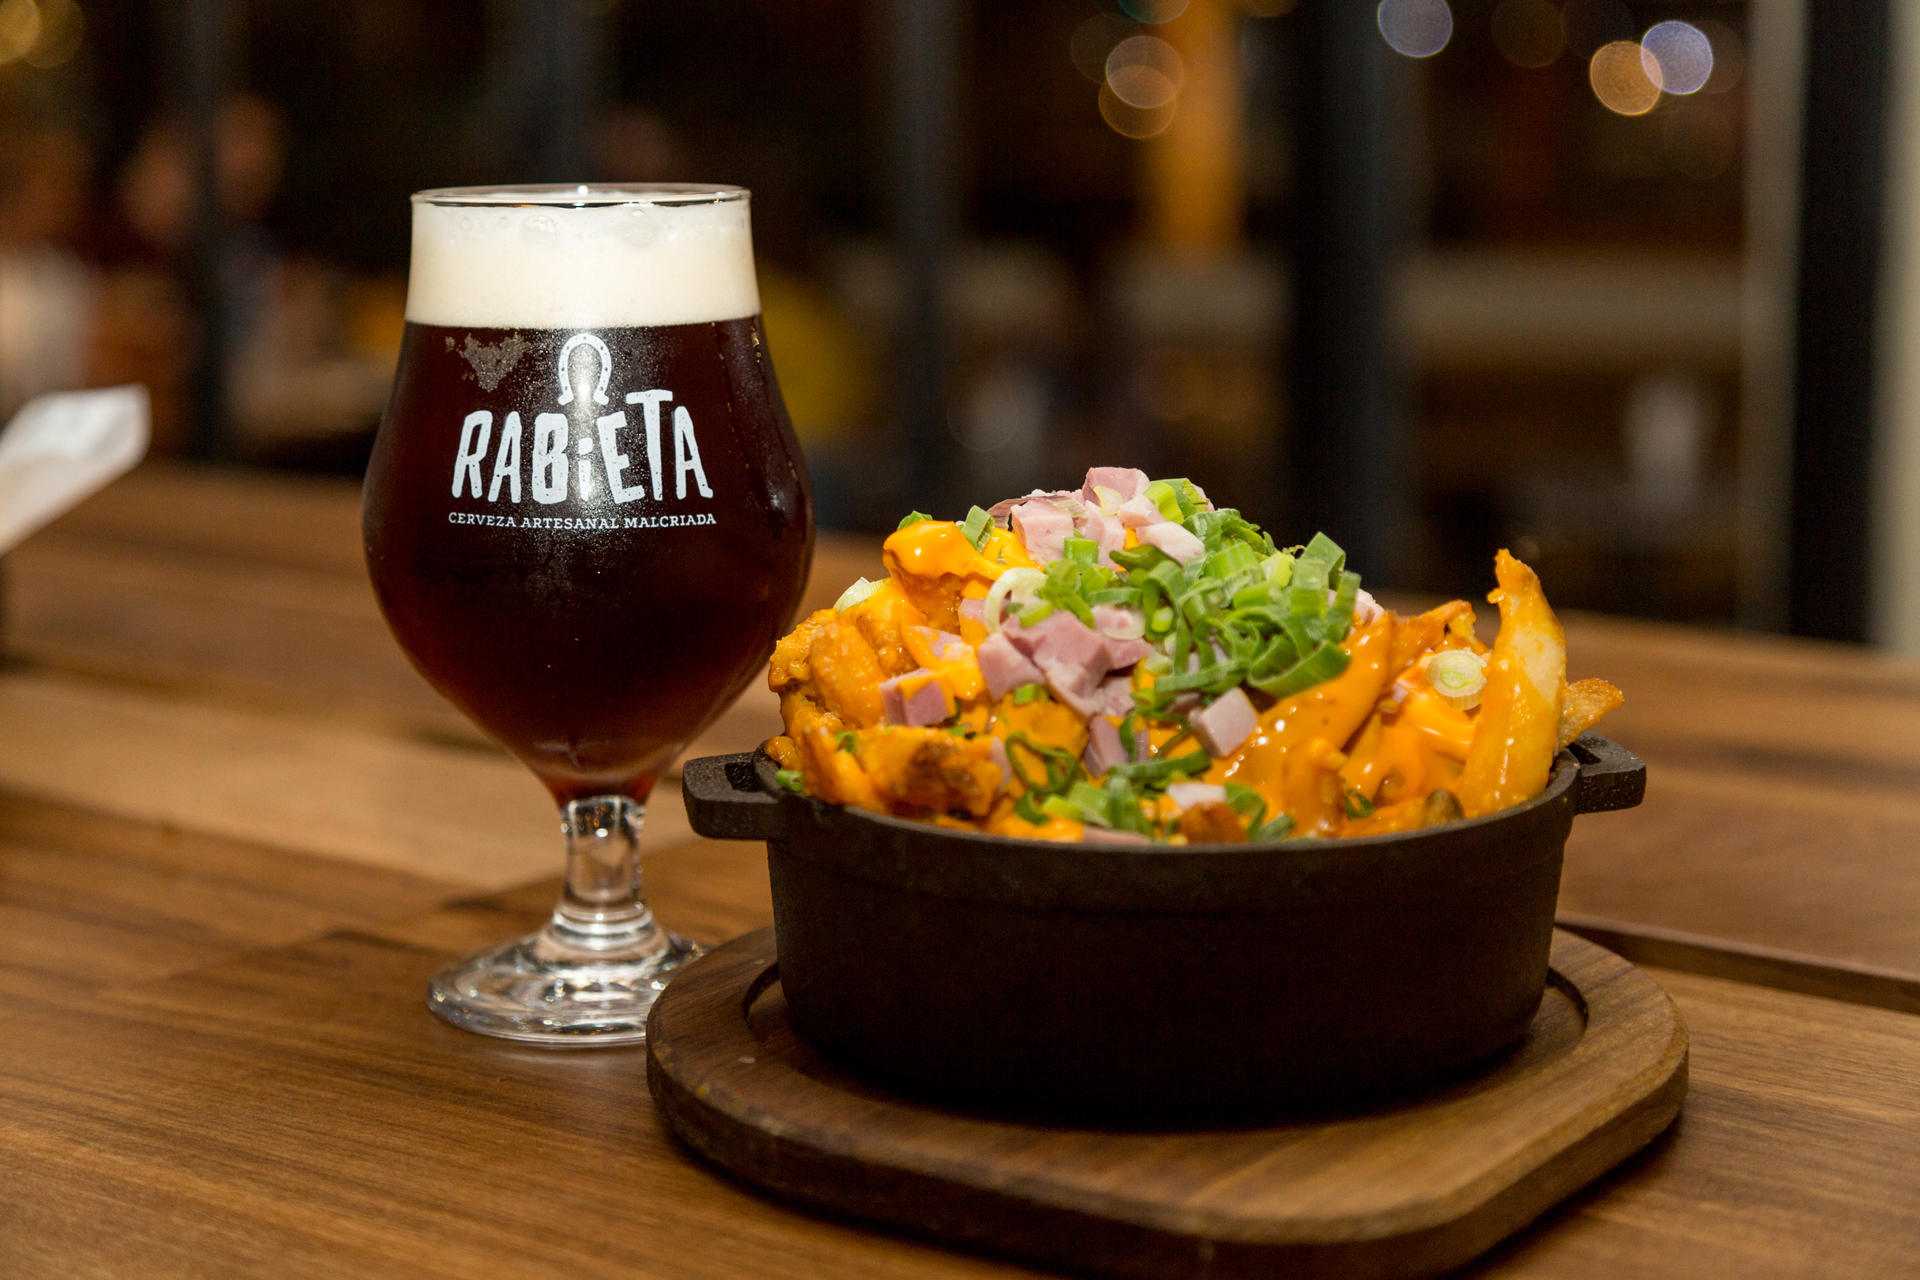 Los estilos que más piden en Rabieta son: la IPA, que es una cerveza que posee el balance ideal entre aroma, y amargor